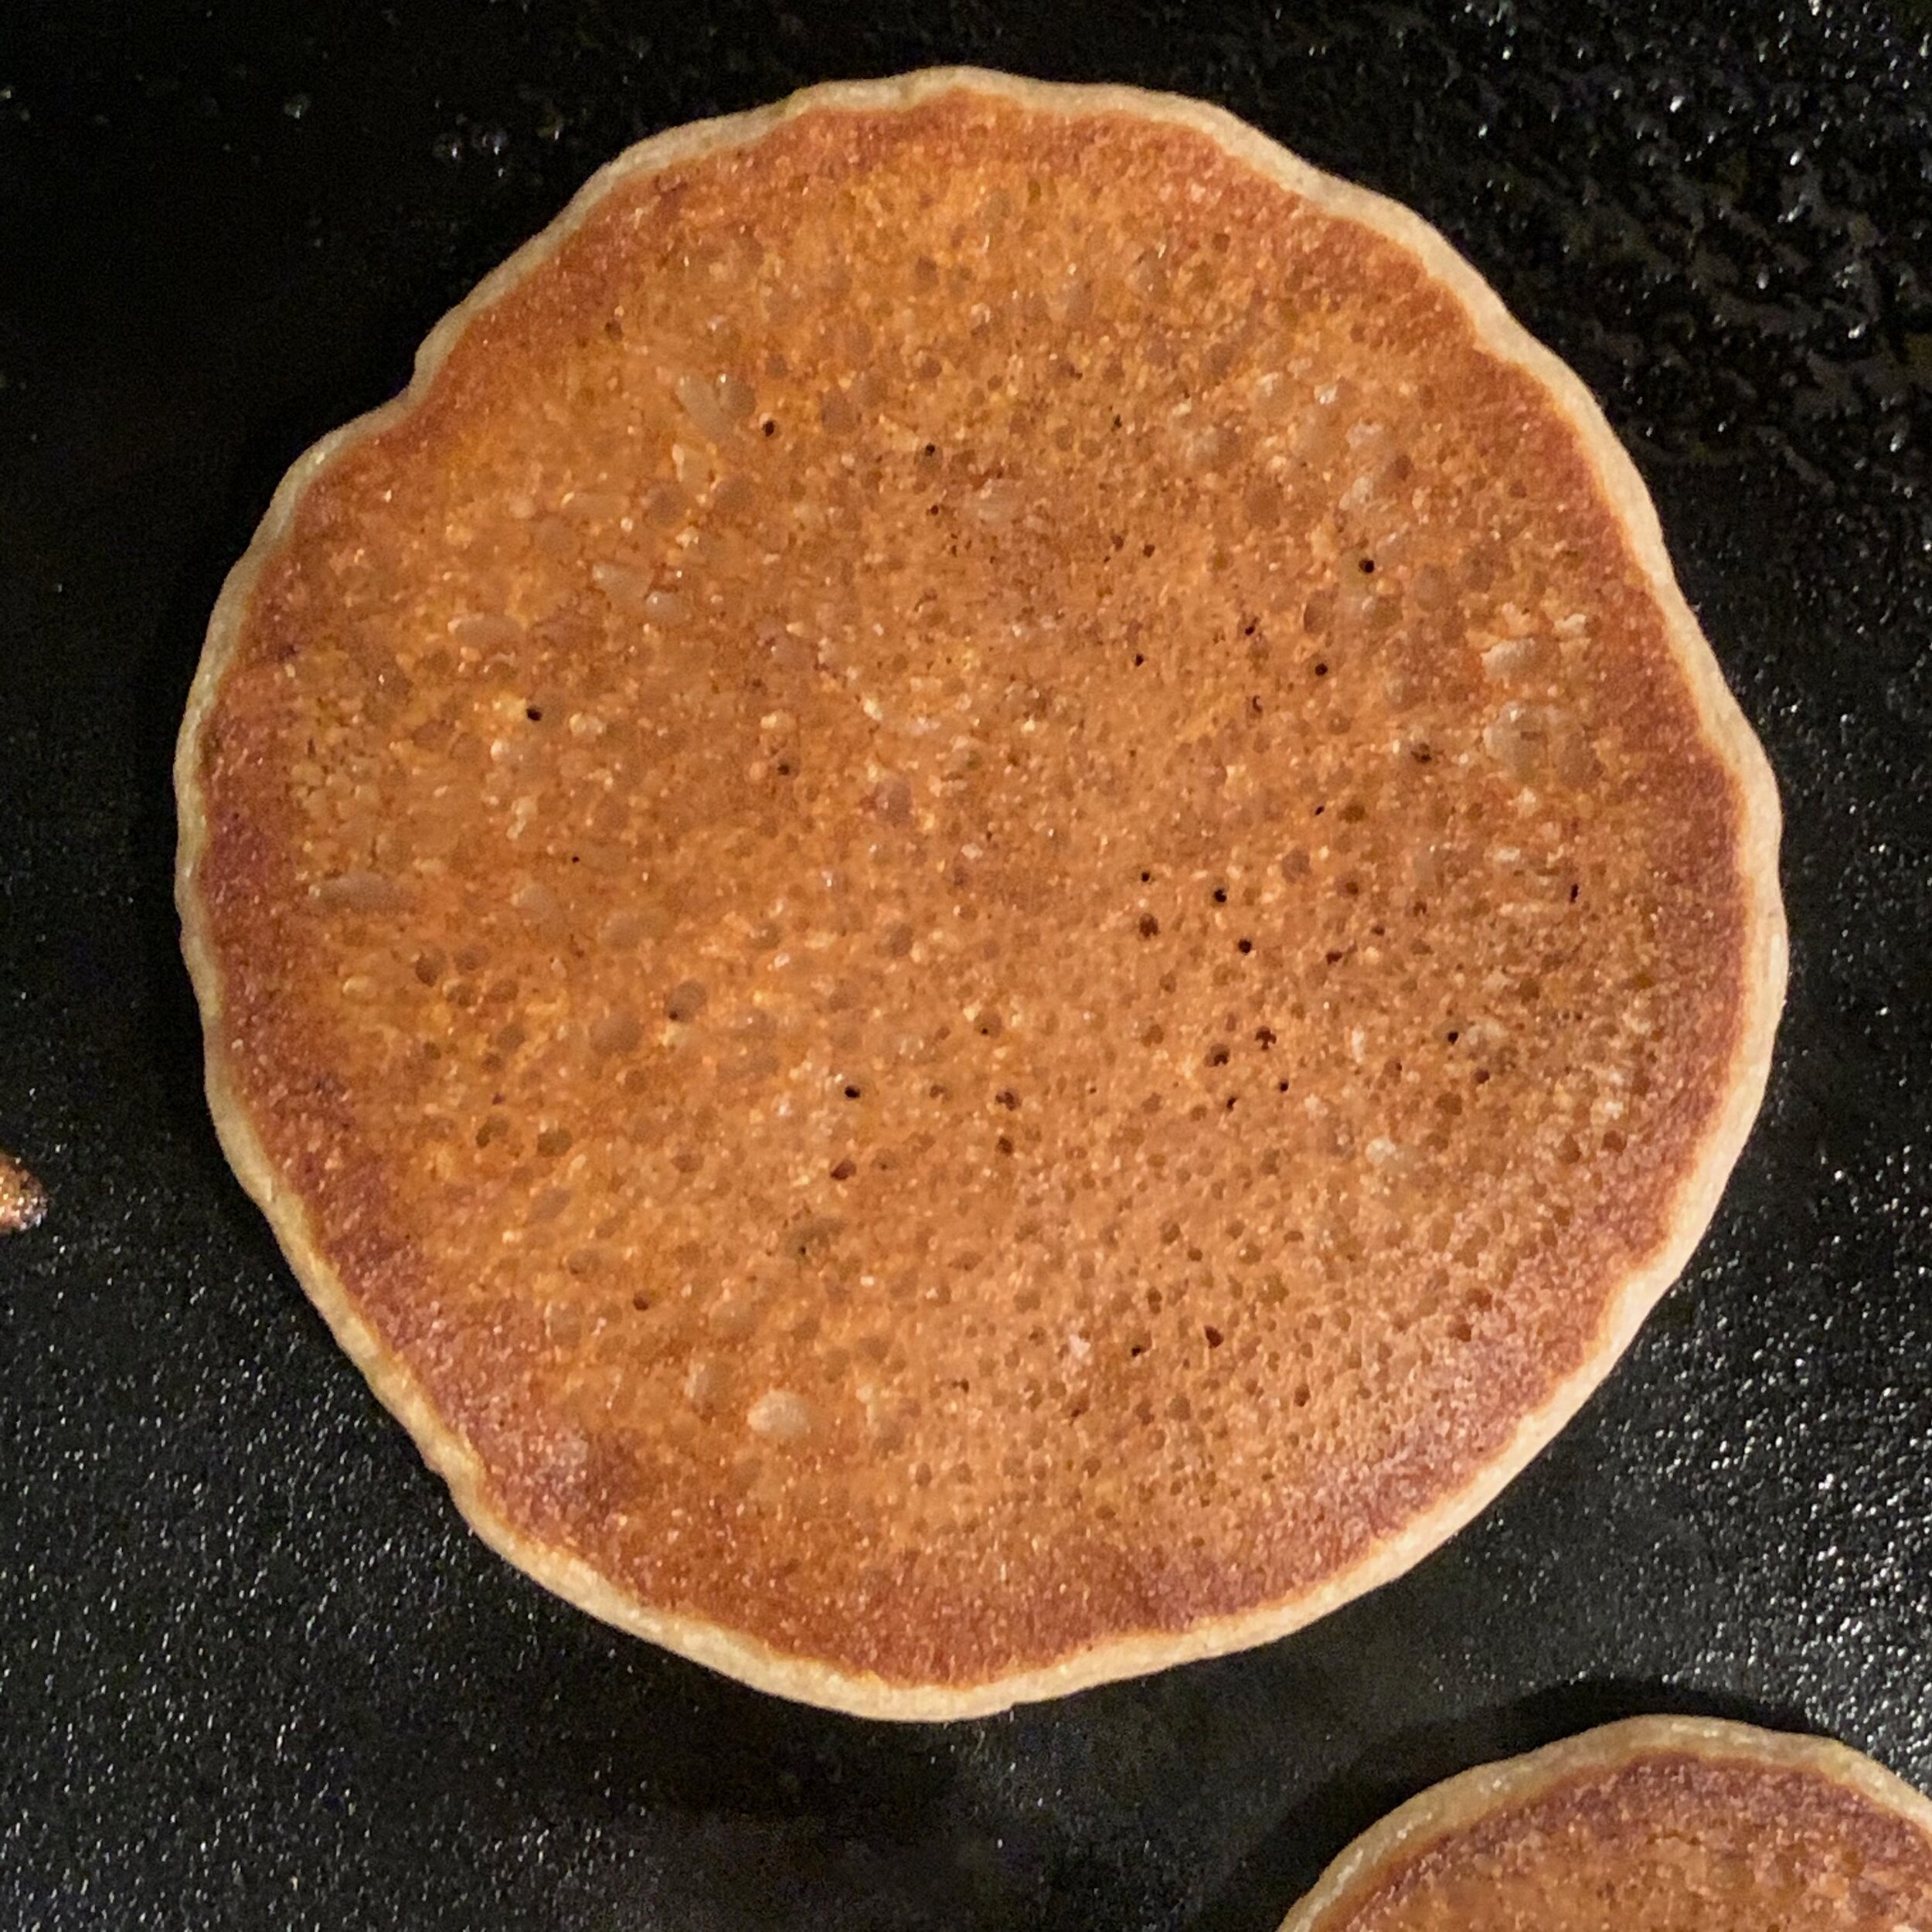 perfect looking pancake